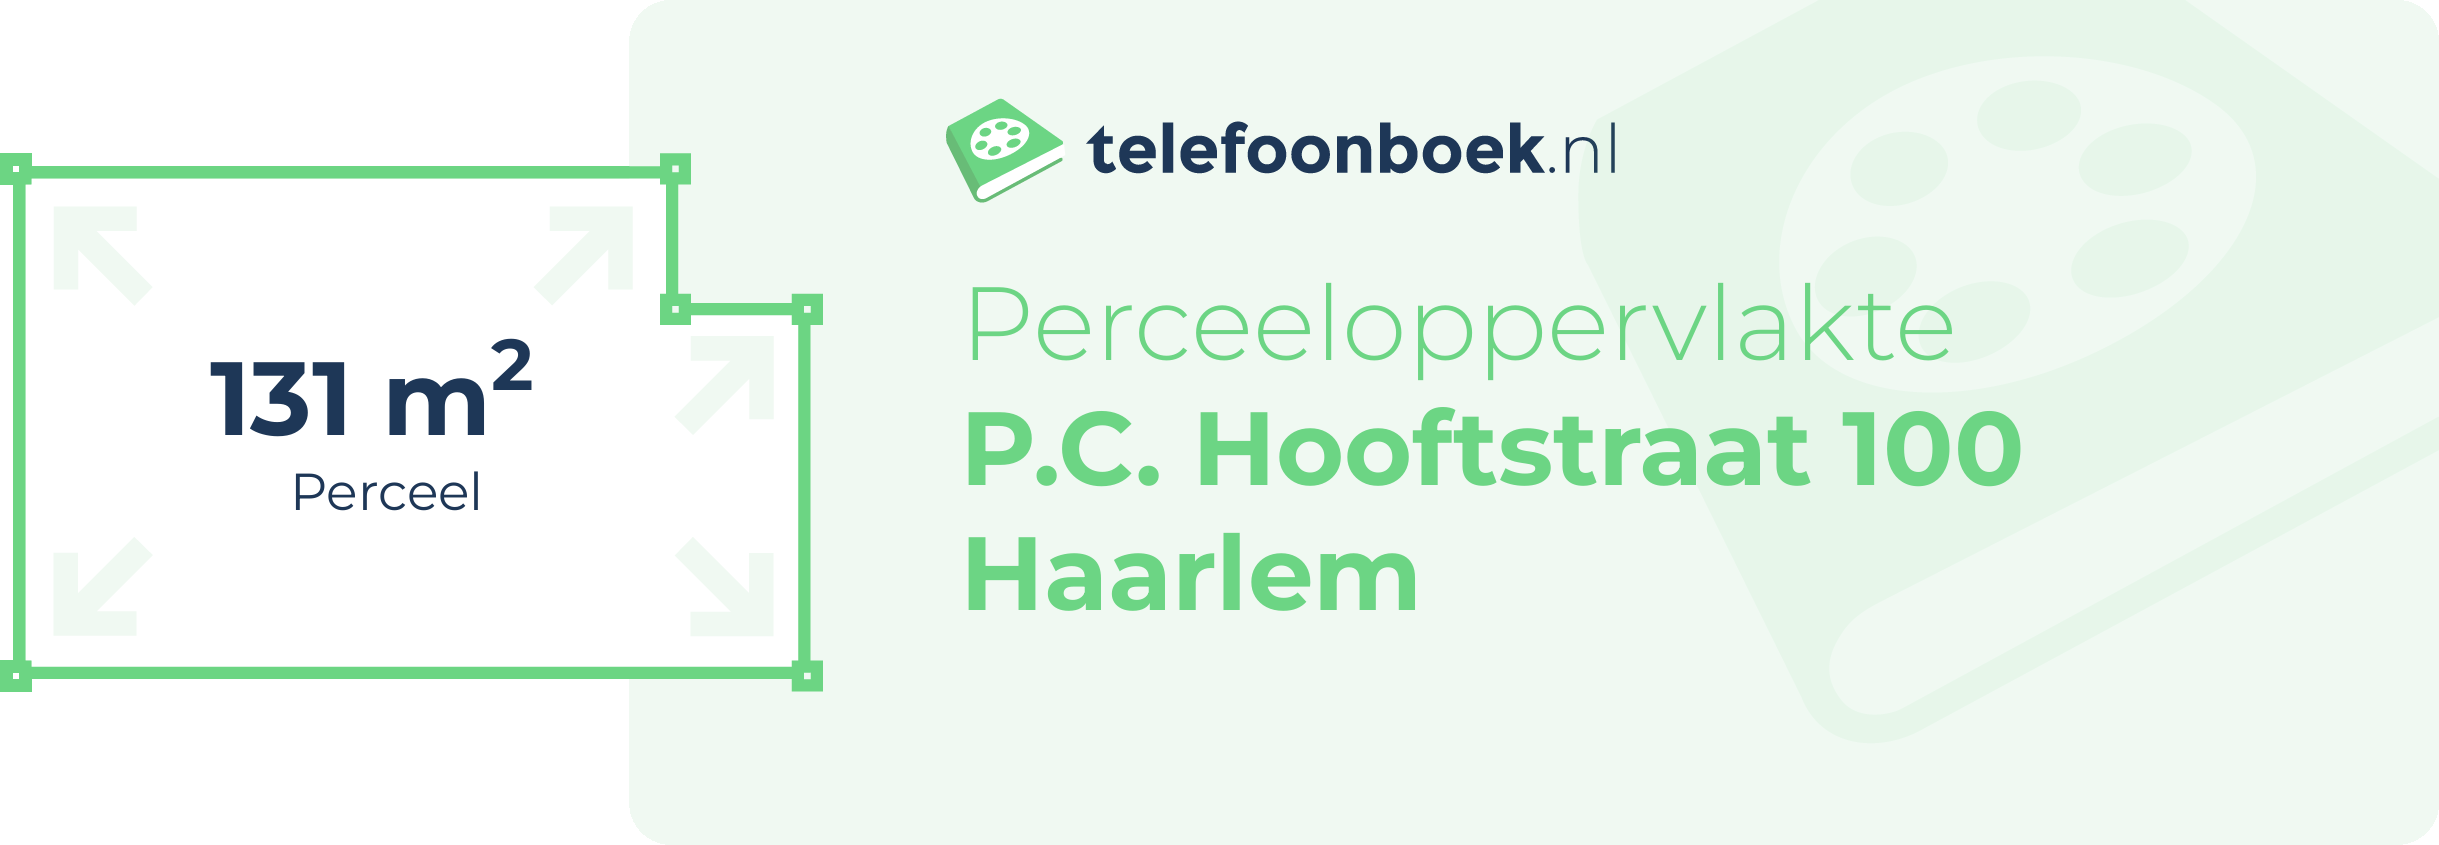 Perceeloppervlakte P.C. Hooftstraat 100 Haarlem